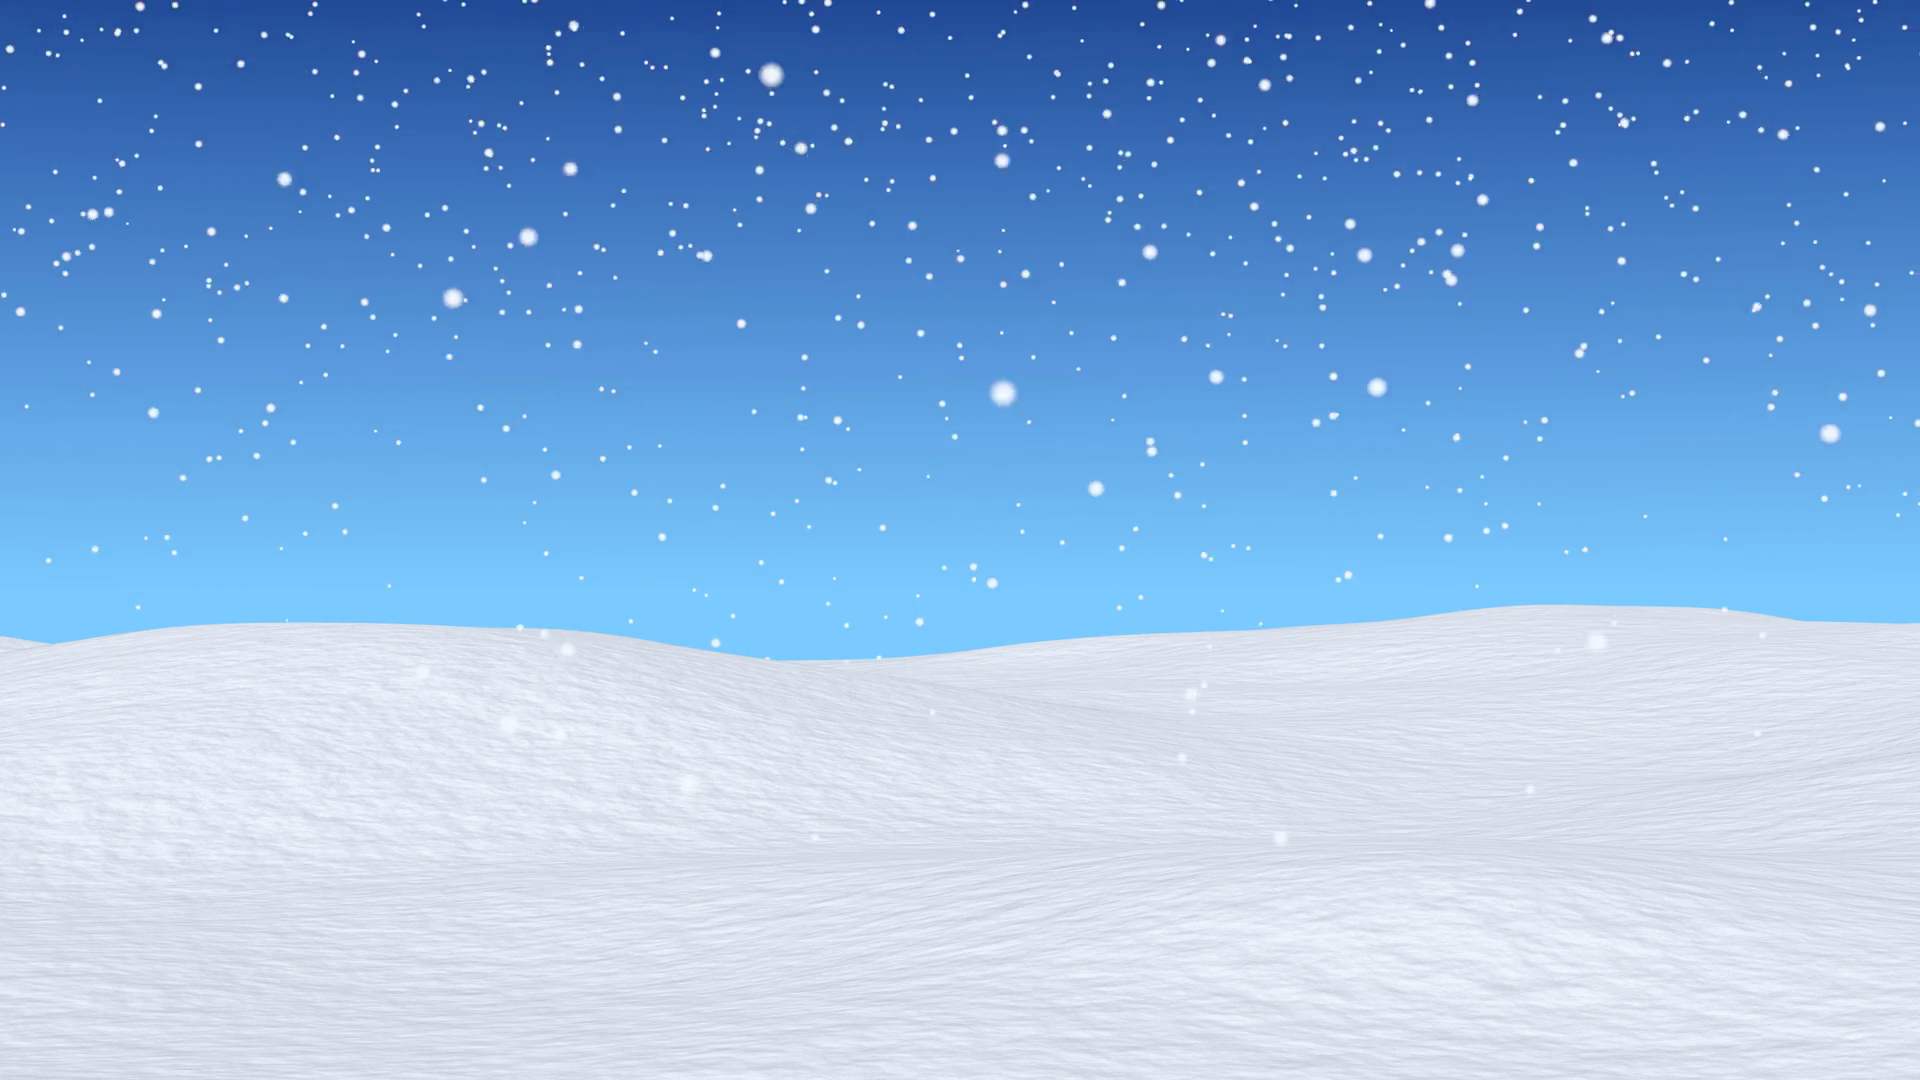 Tuyết là một trong những hiện tượng thiên nhiên rất đẹp và kỳ diệu. Hãy cùng chiêm ngưỡng hình ảnh về tuyết để bạn có thể thưởng thức toàn bộ sự tuyệt vời của mùa đông tuyết trắng.